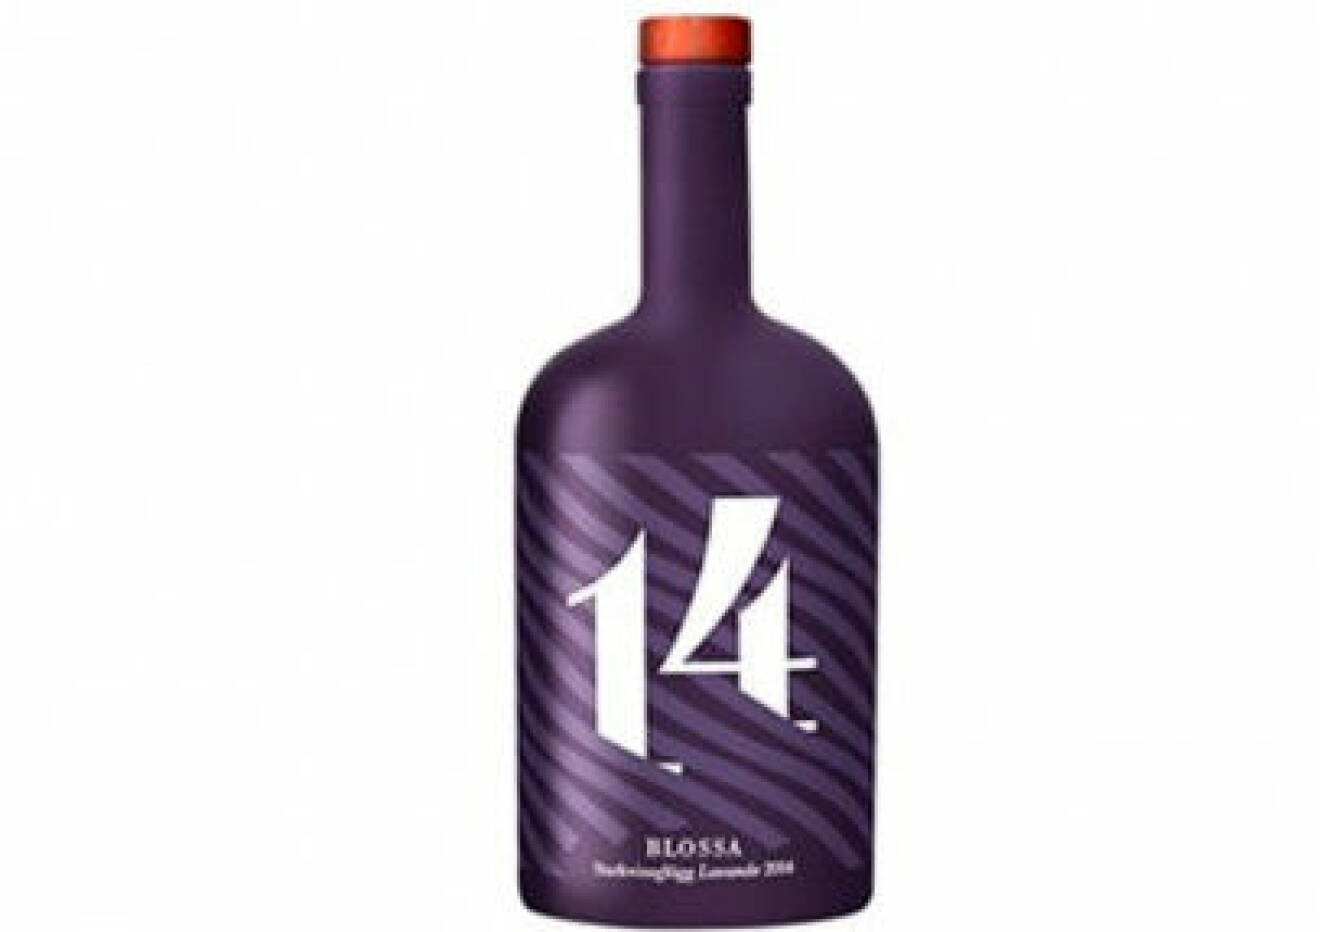 En flaska av Blossas årgångsglögg från år 2014, med smak av lavendel.